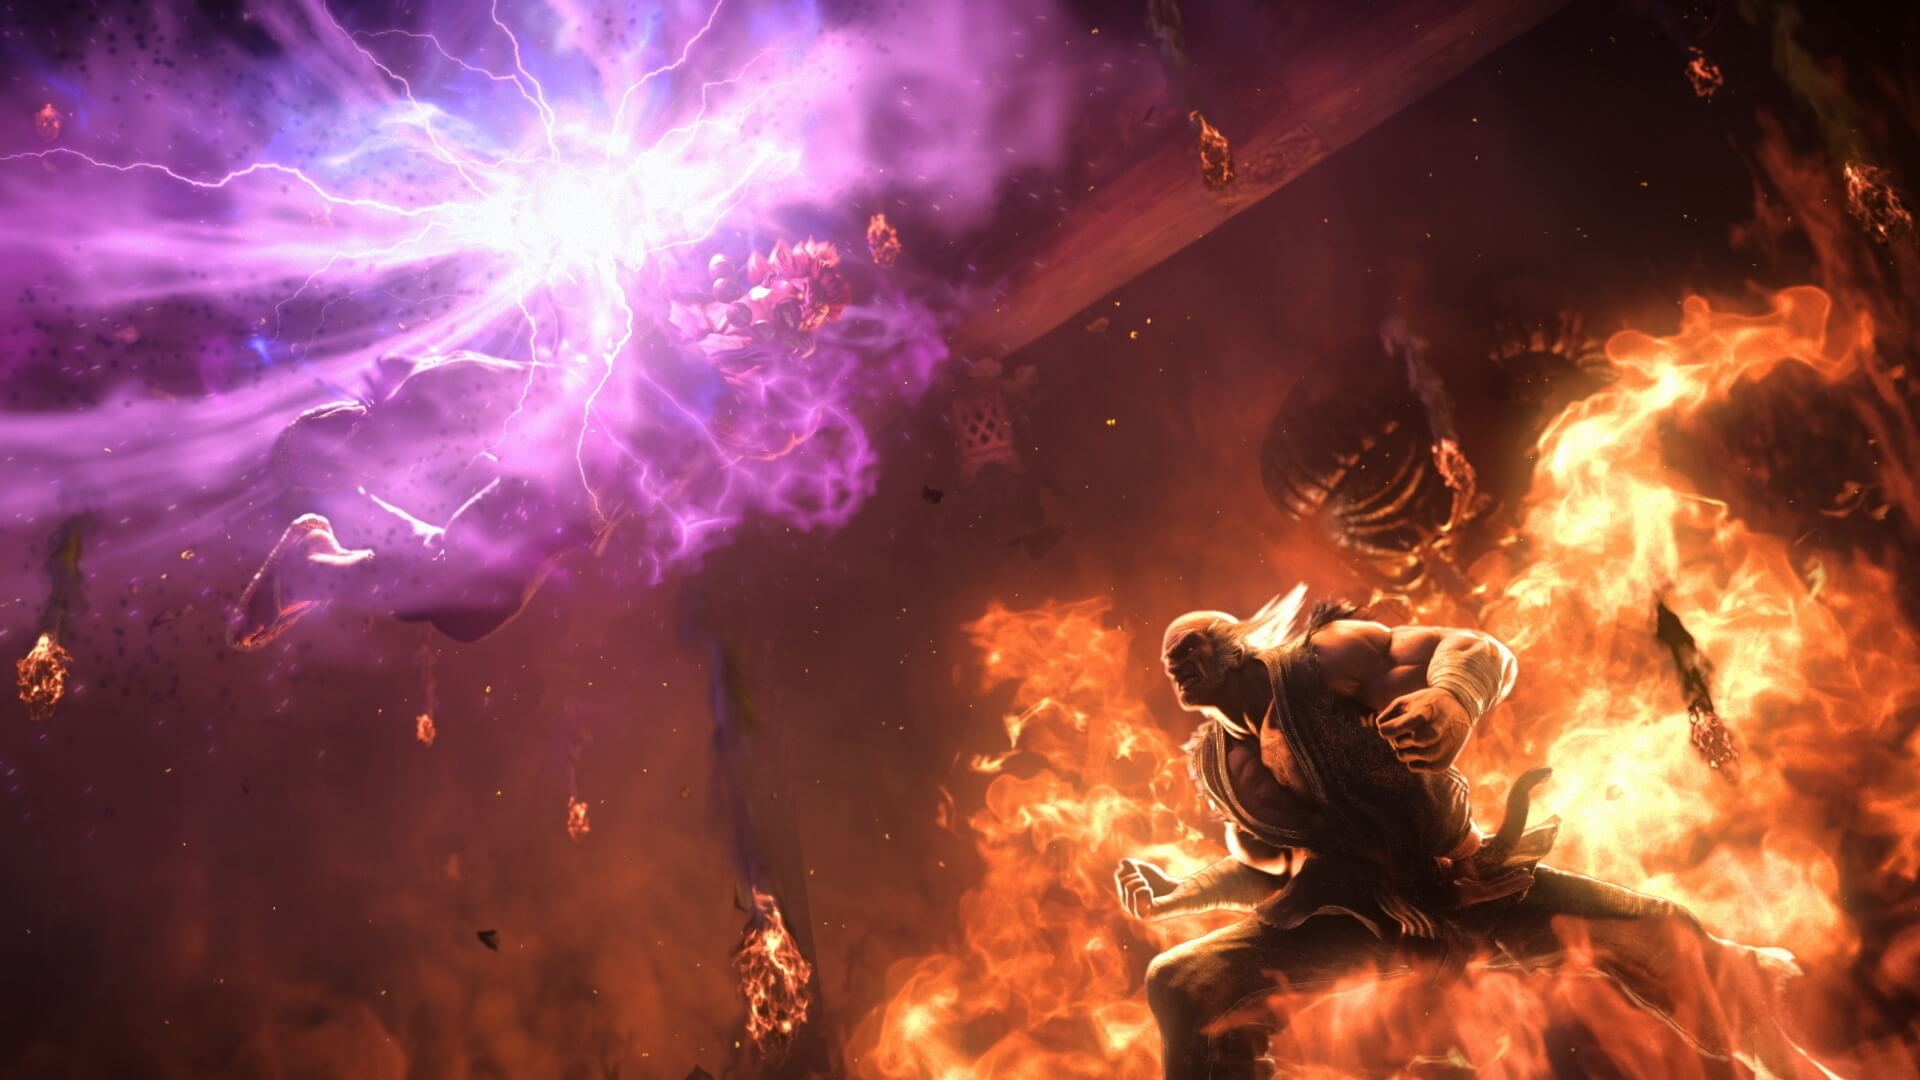 Akuma from Street Fighter is making a guest appearance in Tekken 7.